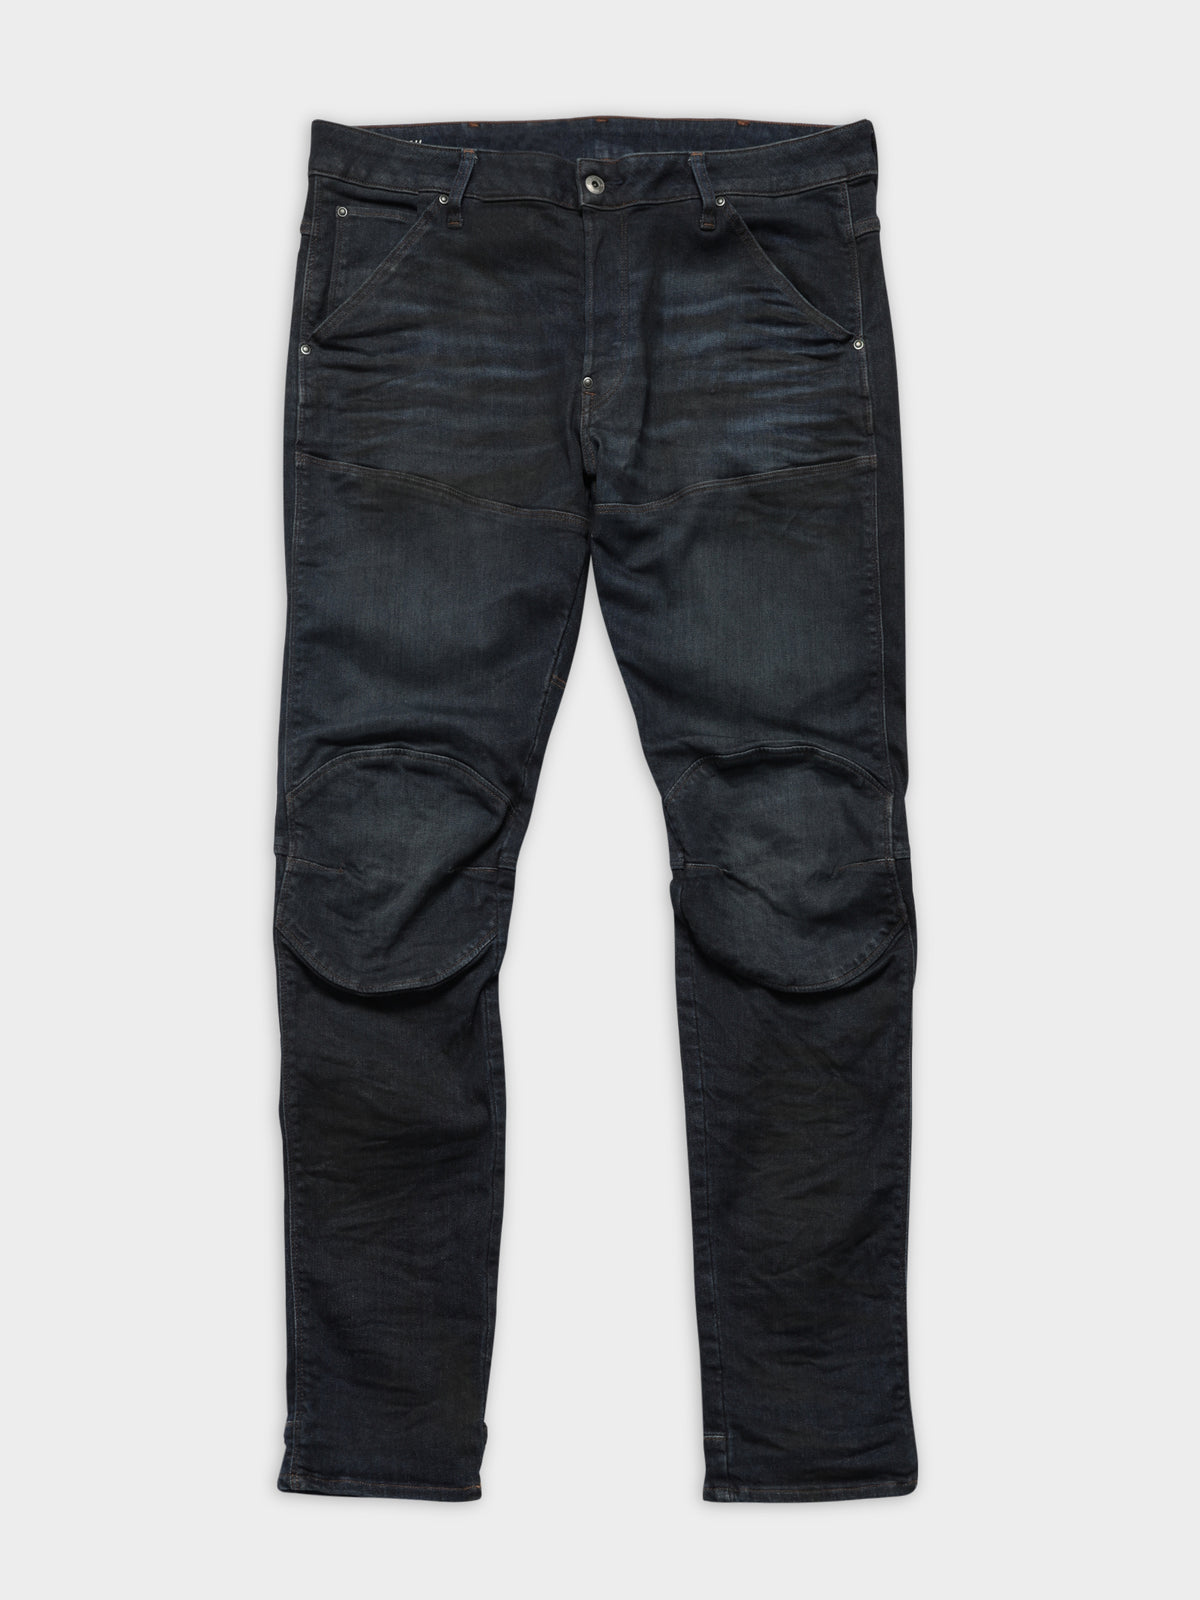 5620 3D Slim Denim Jeans in Indigo Dye